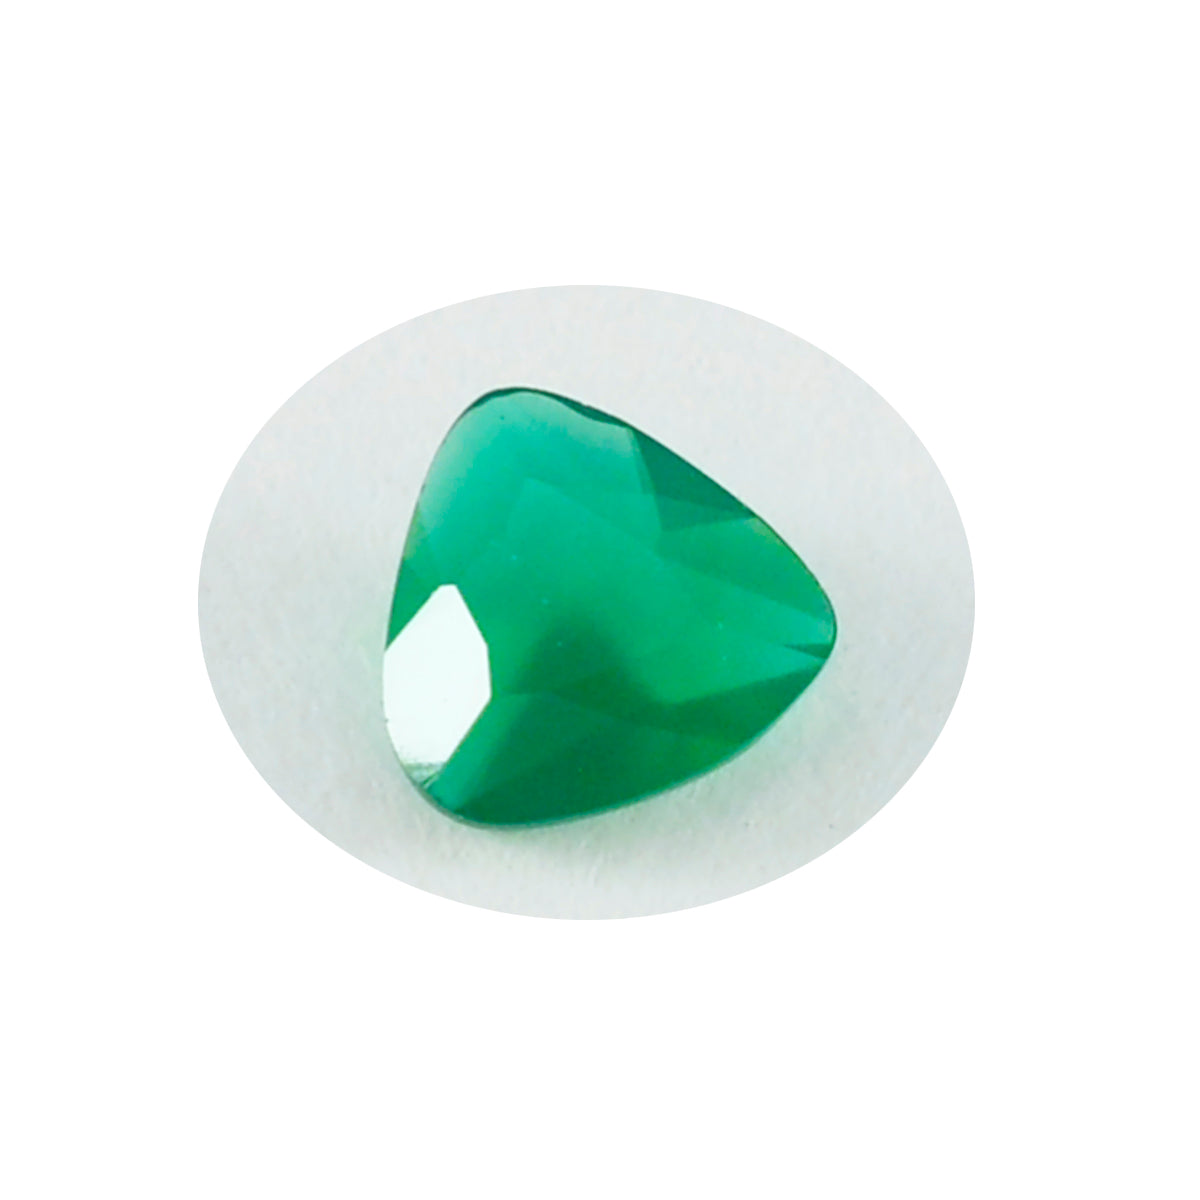 riyogems 1 шт. натуральный зеленый оникс ограненный 12x12 мм форма триллиона красивые качественные свободные драгоценные камни